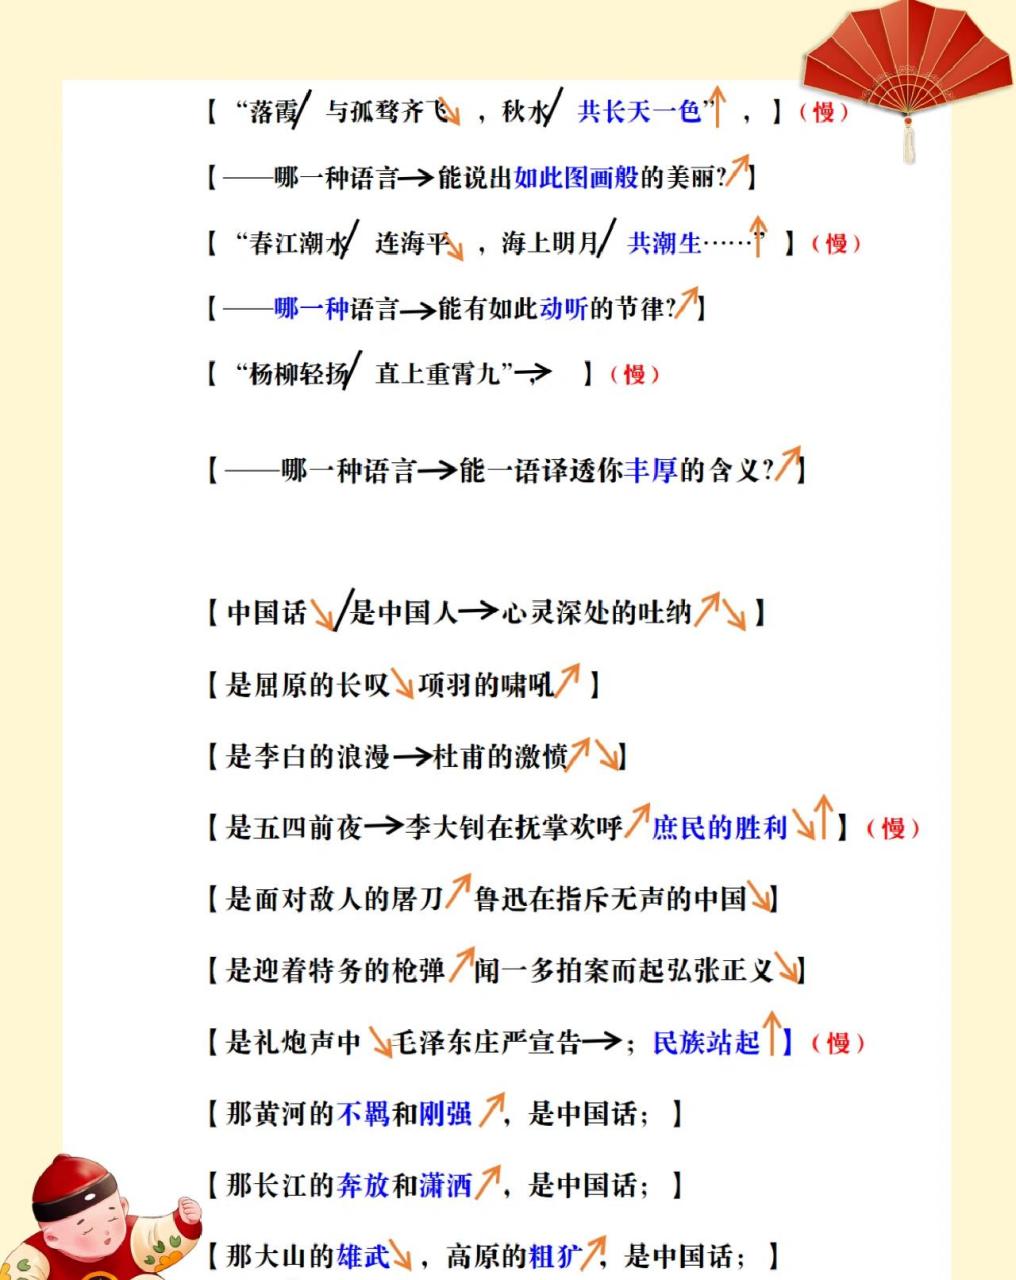 少儿朗诵《中国话》 94适合7～12岁学生朗诵的作品